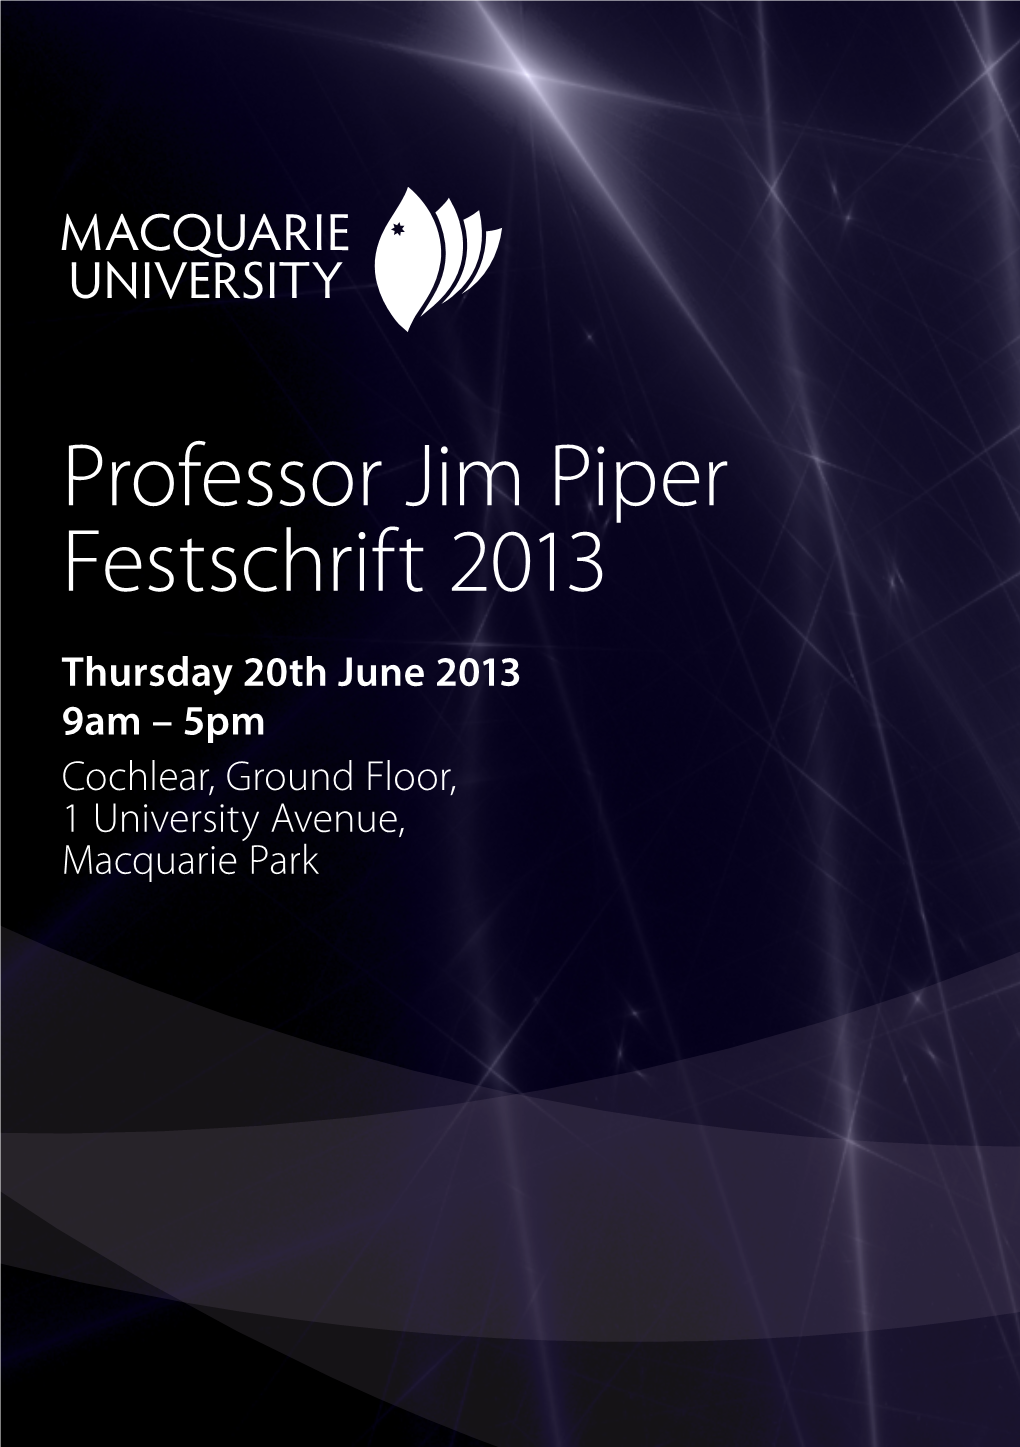 Professor Jim Piper Festschrift 2013